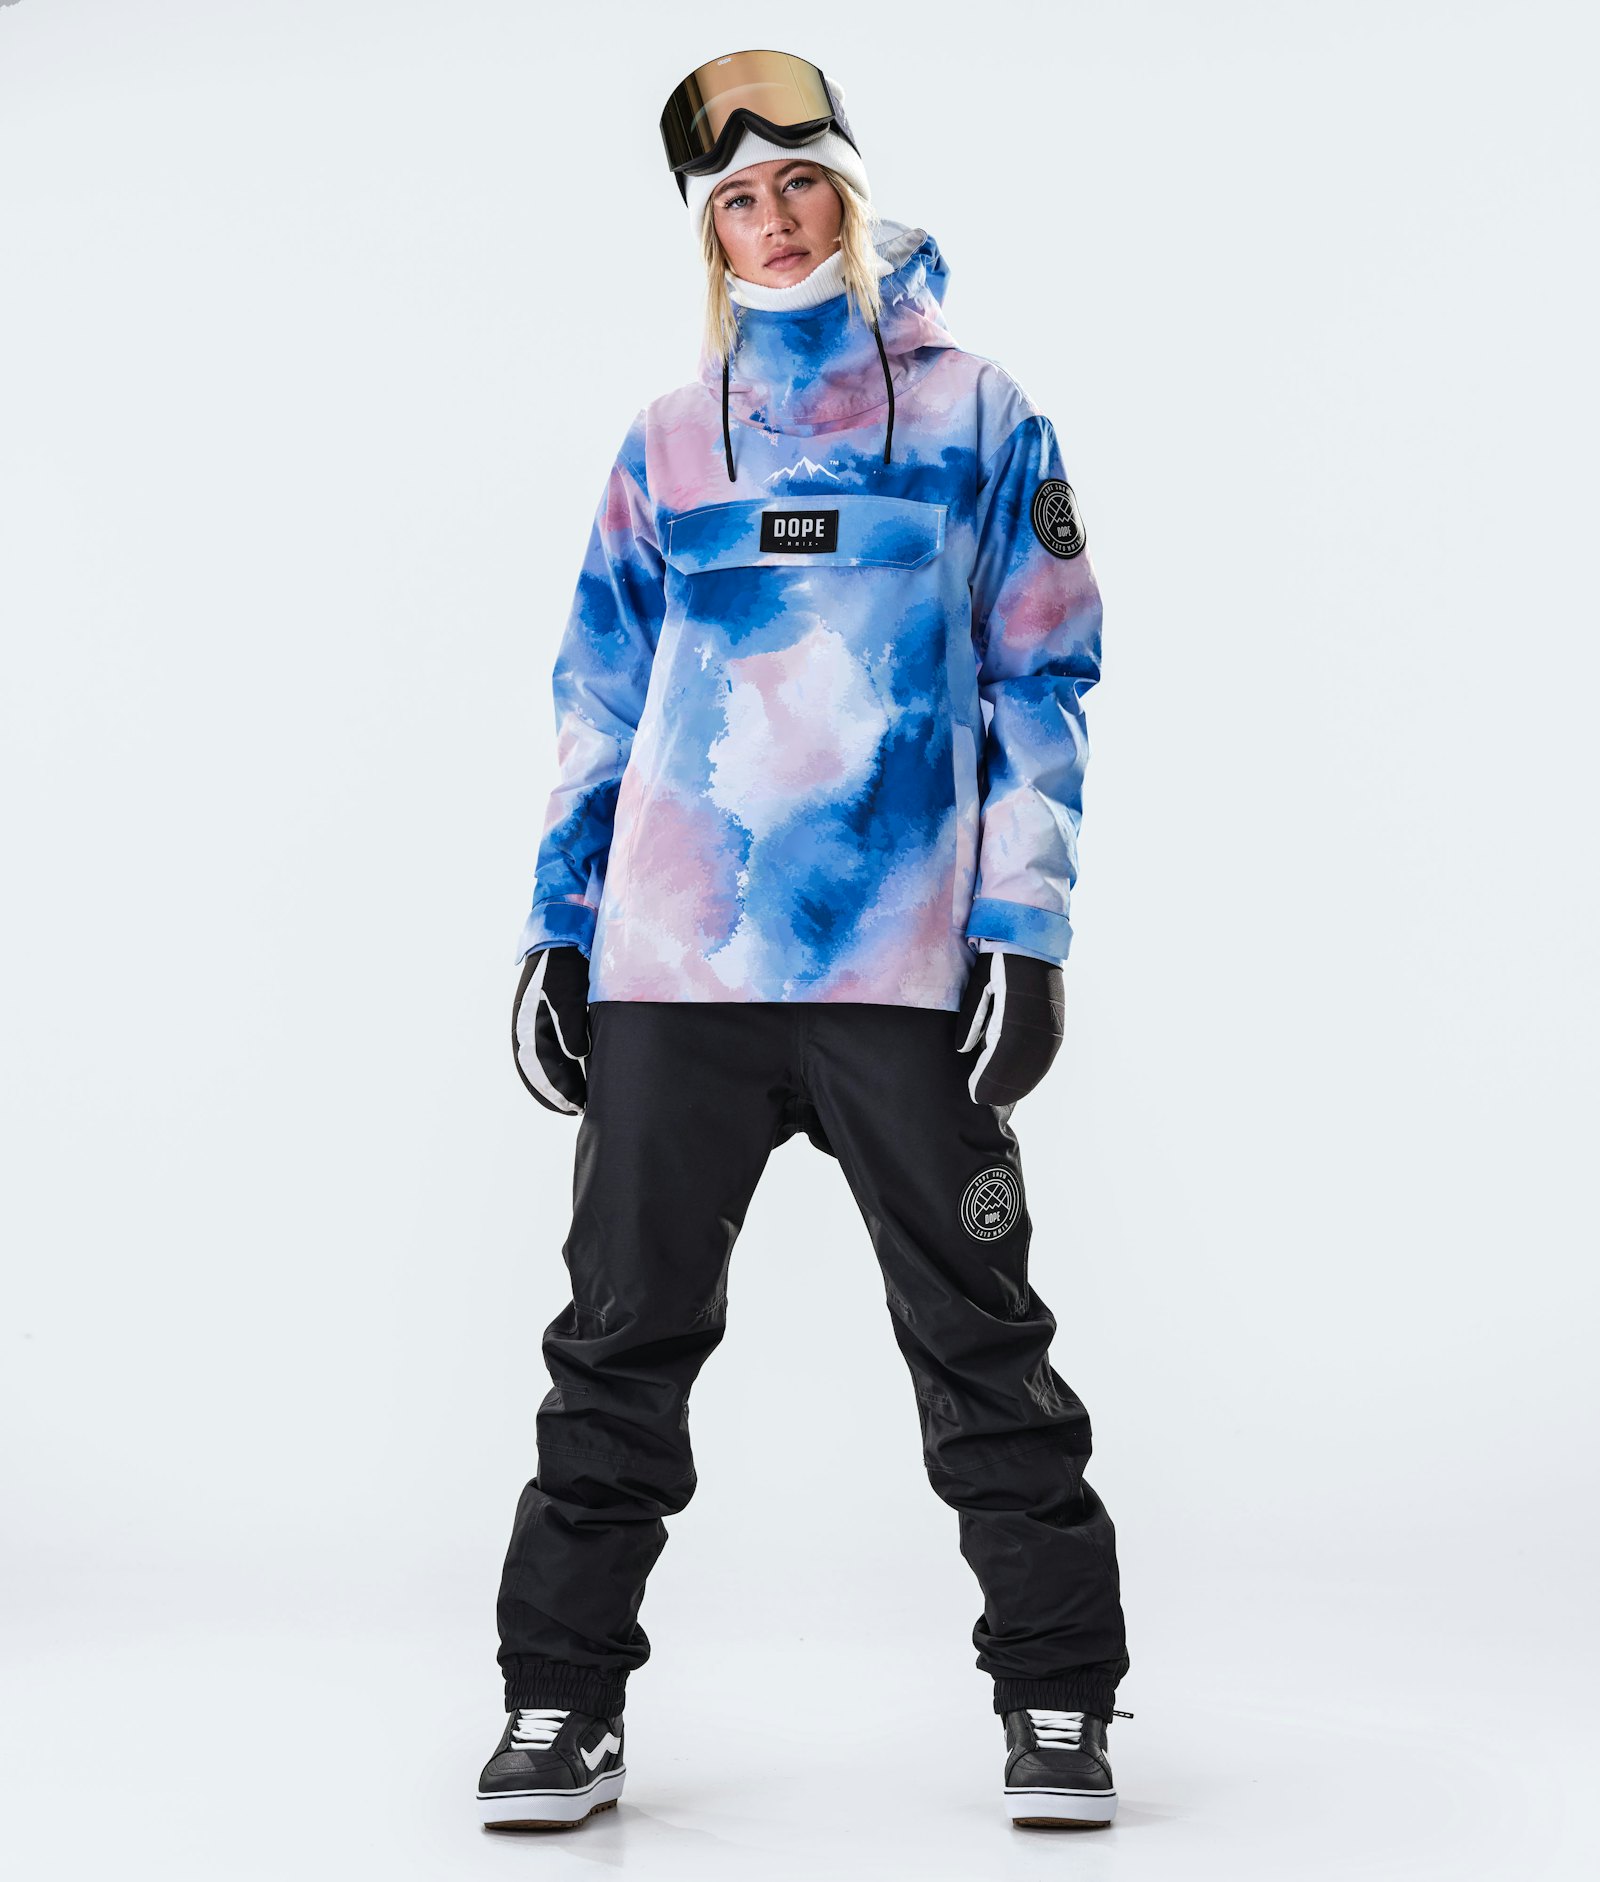 Dope Blizzard W 2020 Snowboard Jacket Women Cloud